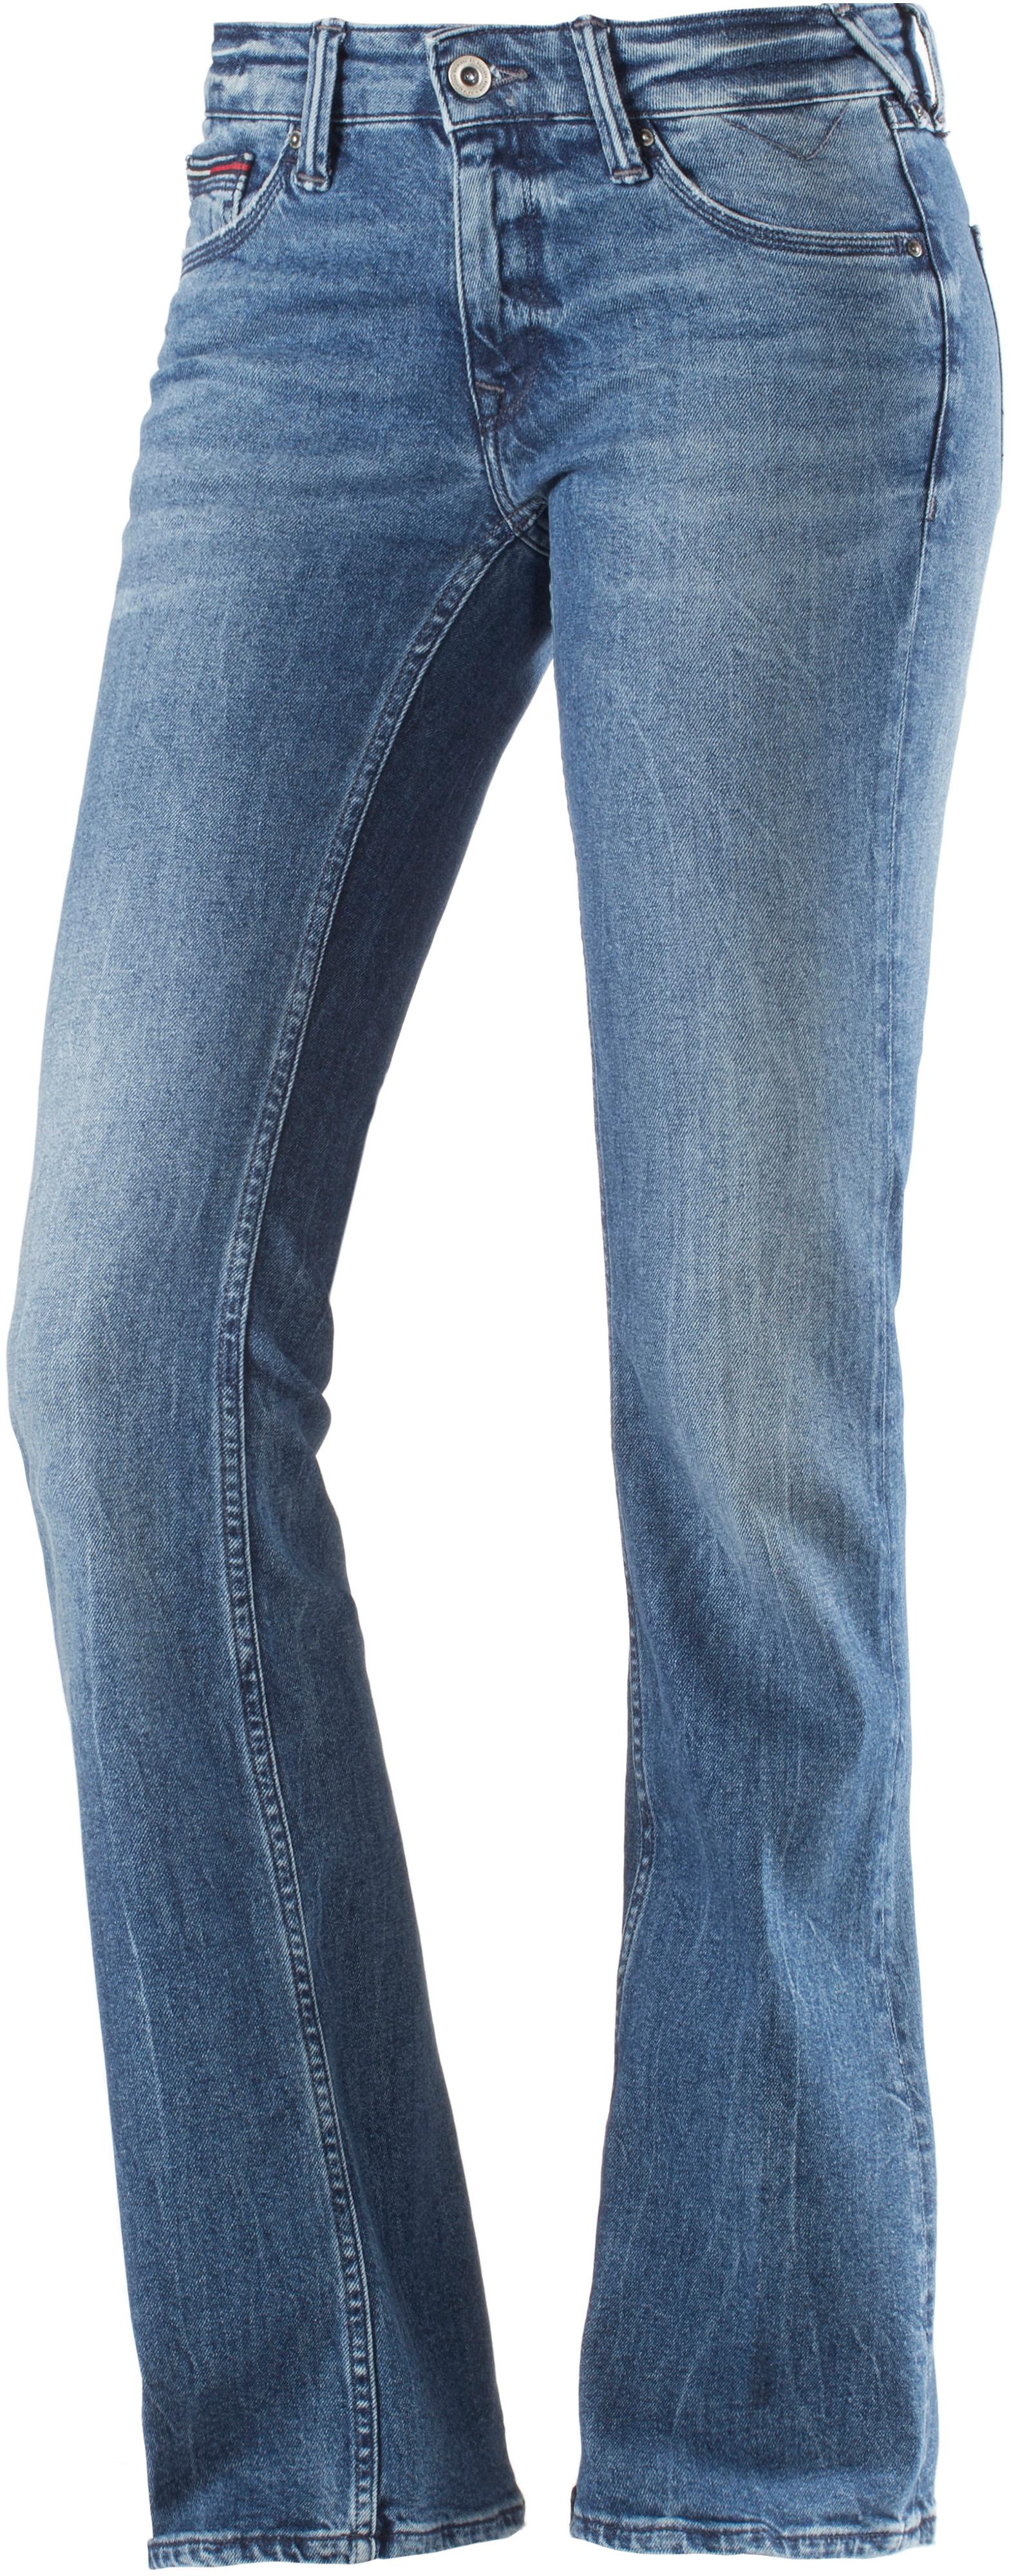 hilfiger jeans bootcut